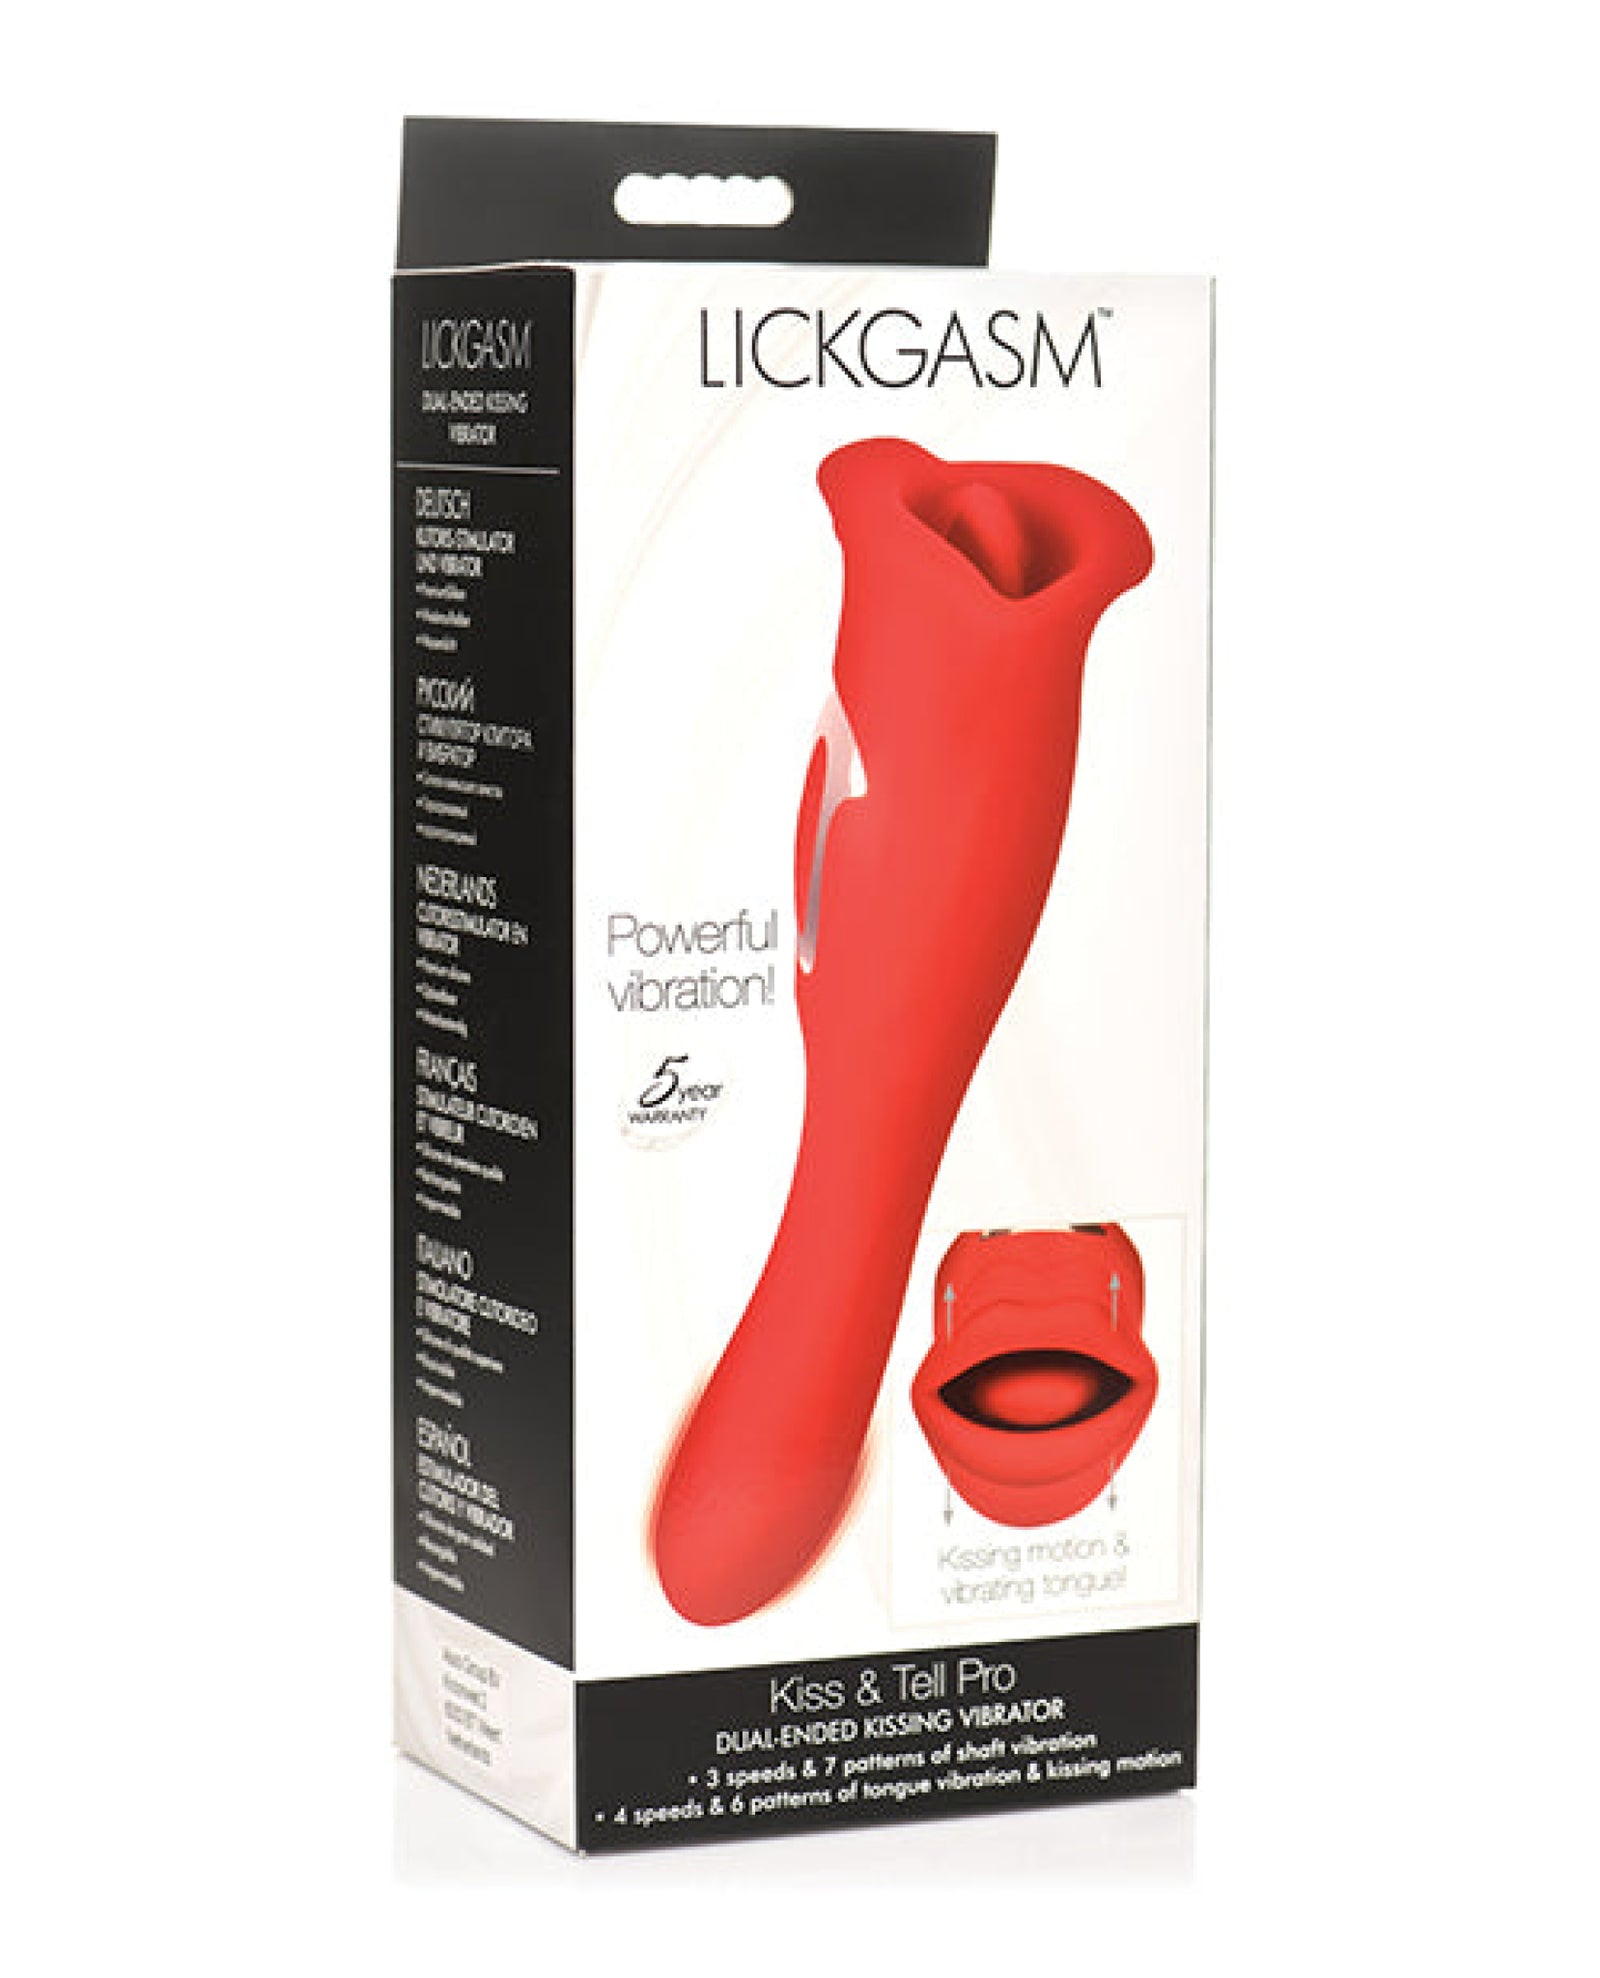 Shegasm Lickgasm Kiss + Tell Pro Dual Ended Kissing Vibrator - Red Shegasm